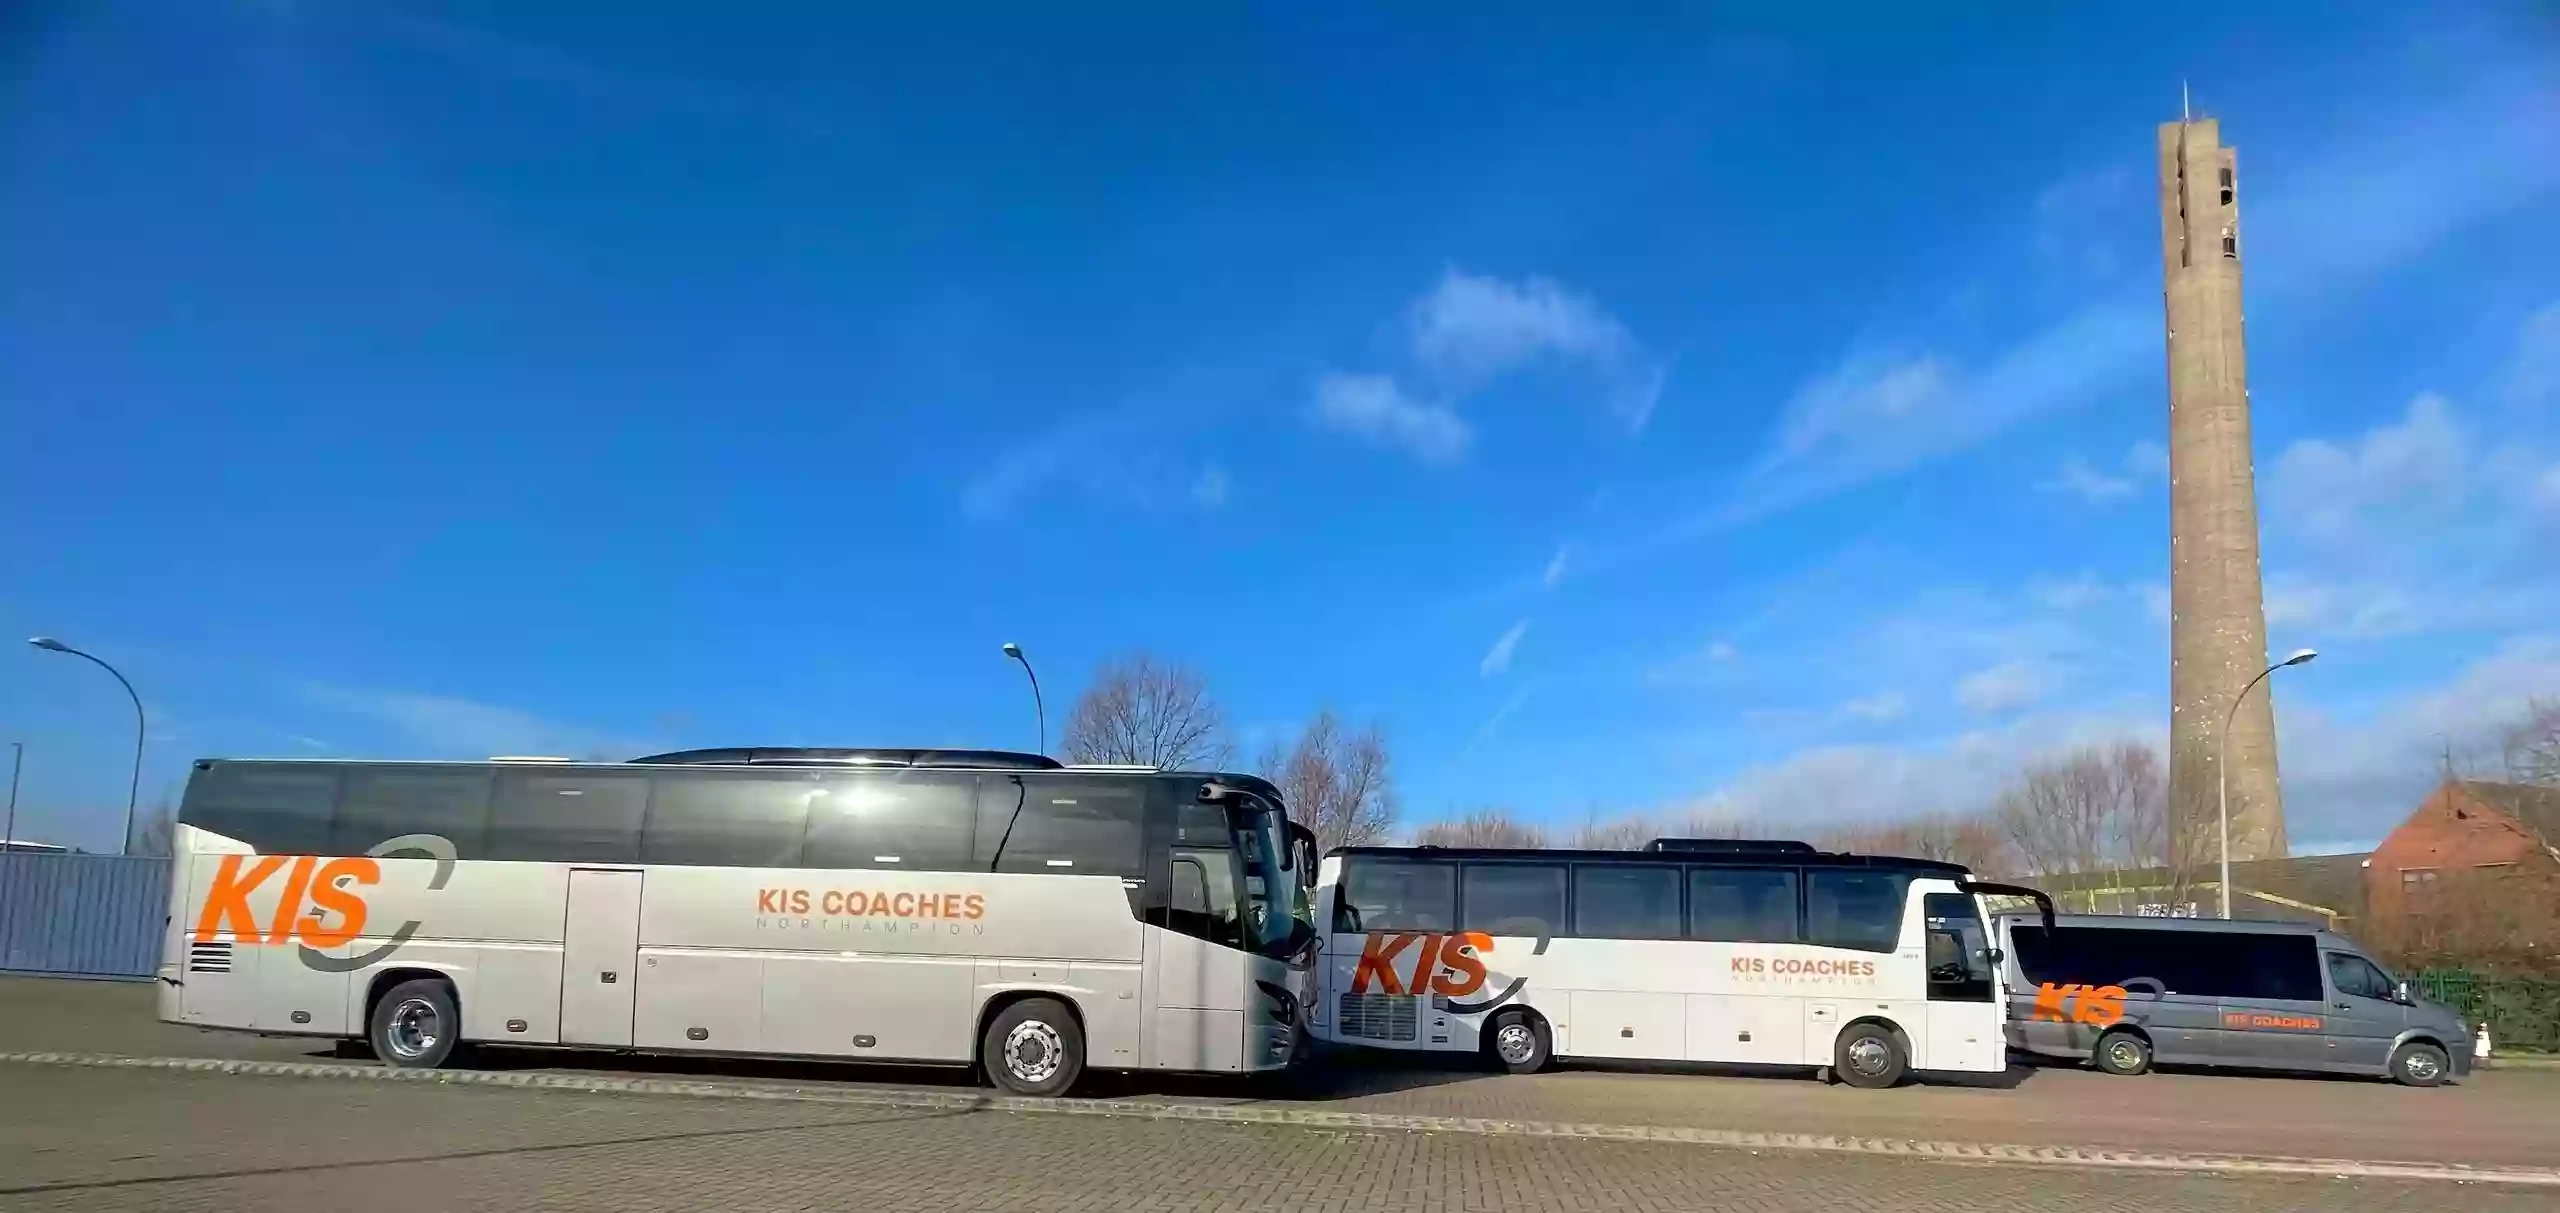 Kis Coaches & Taxis Ltd